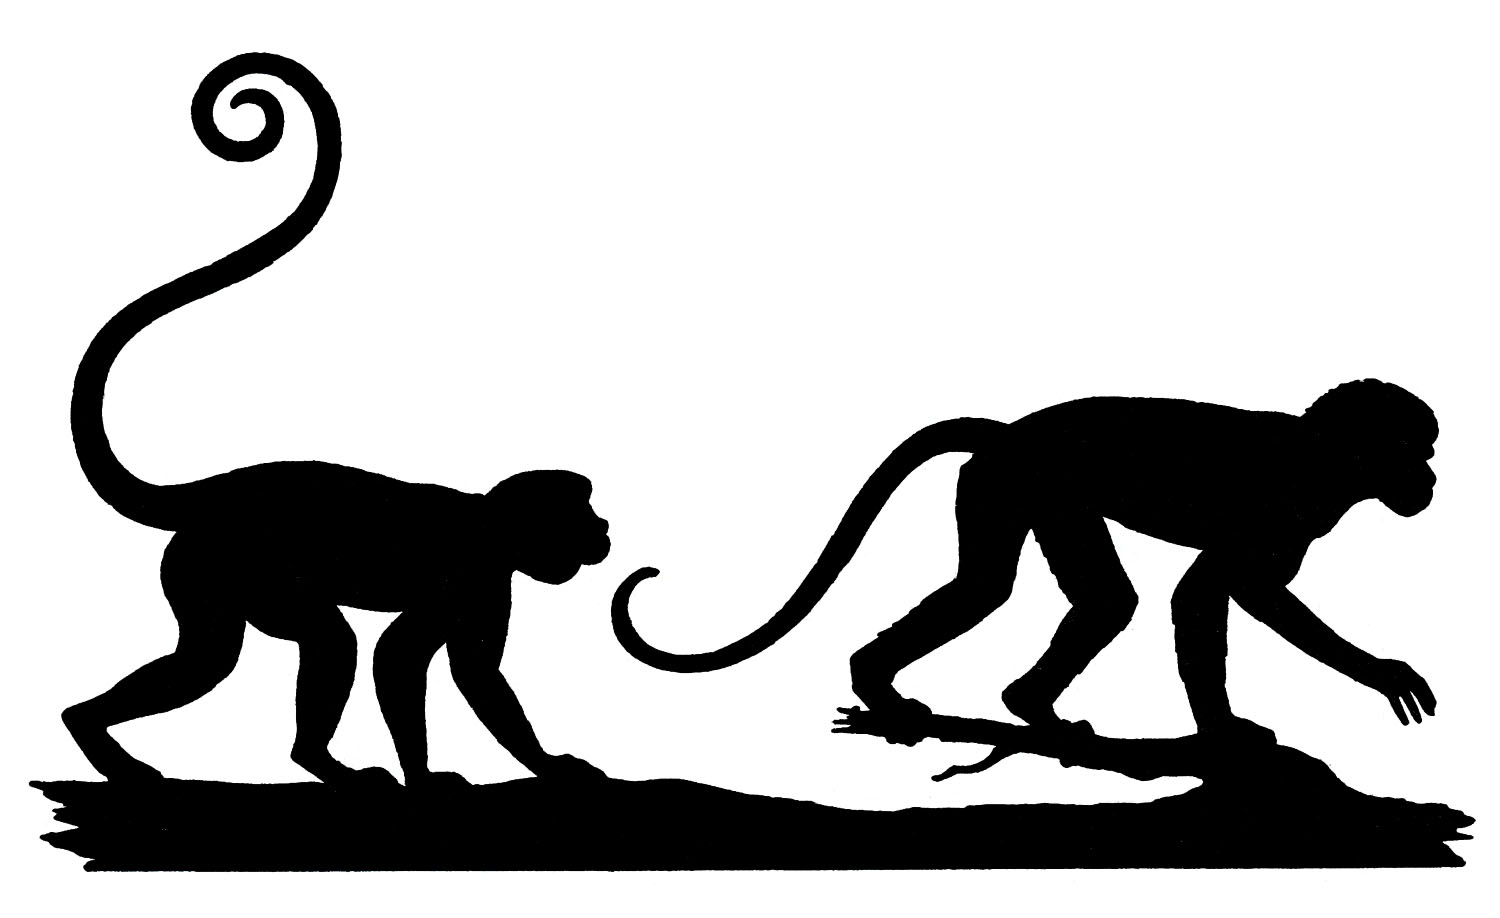 Monkey silhouette clip art